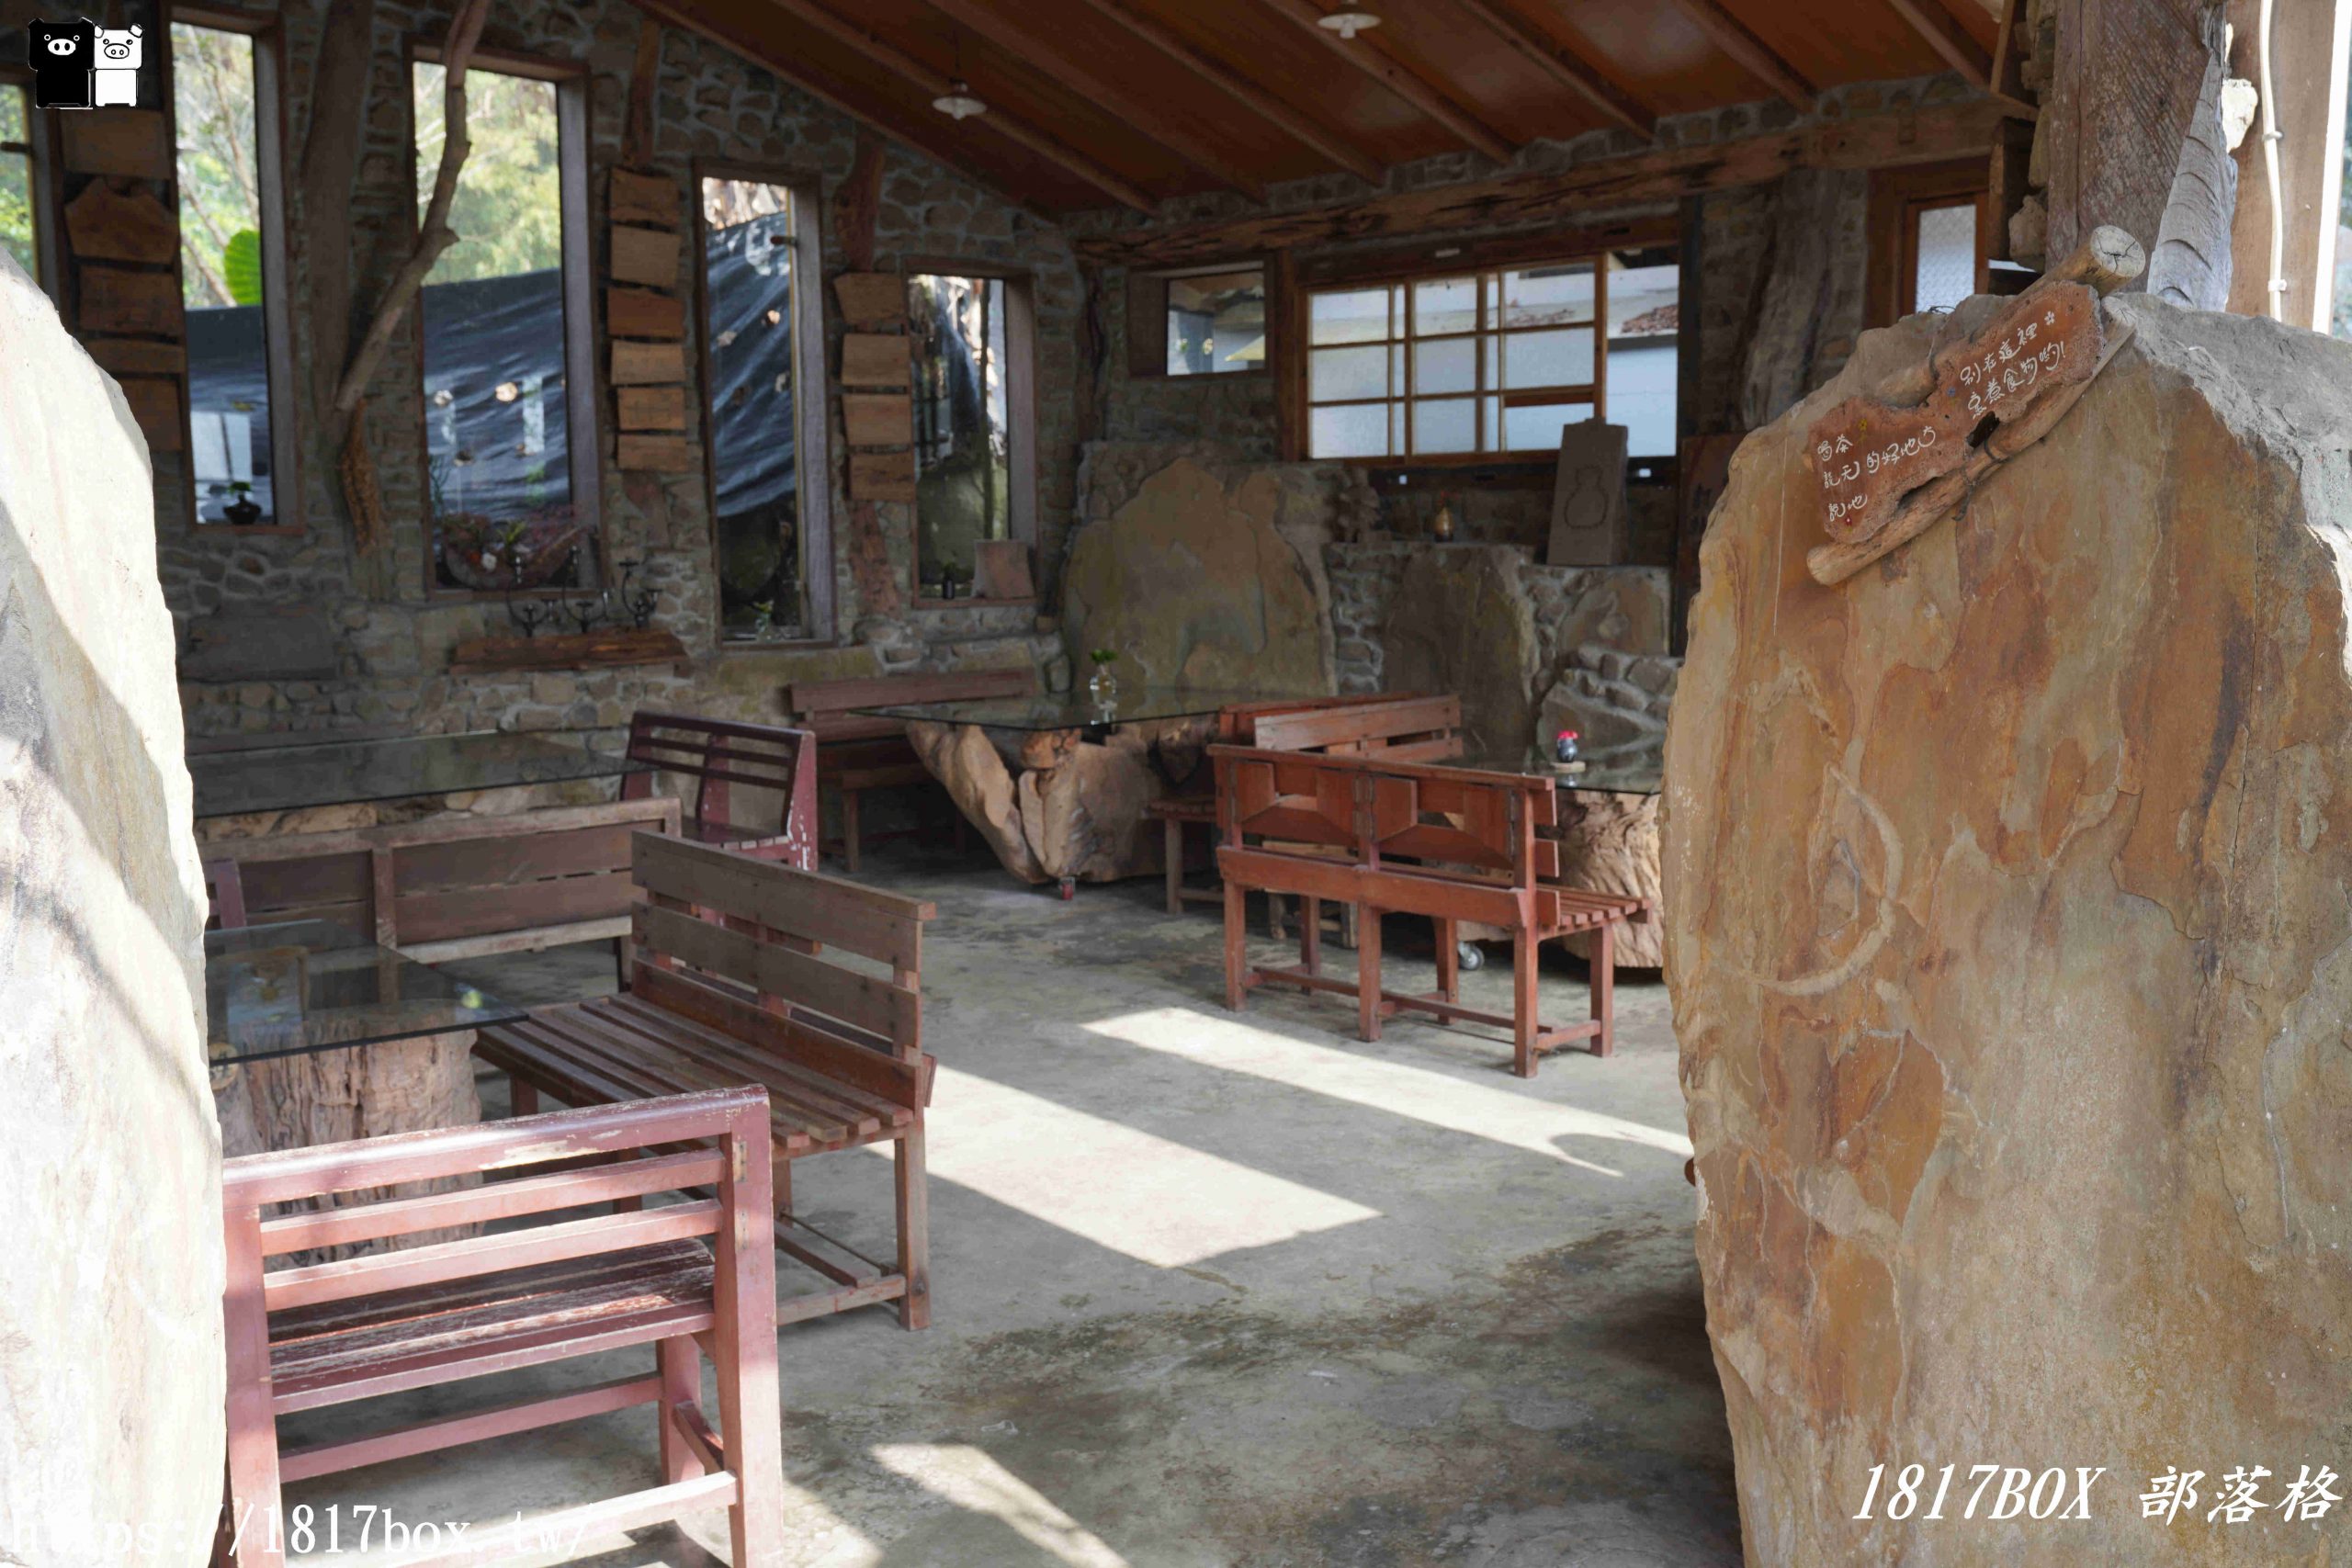 【嘉義。阿里山】阿將的家23咖啡館。走進迷你版的鄒族部落 @1817BOX部落格